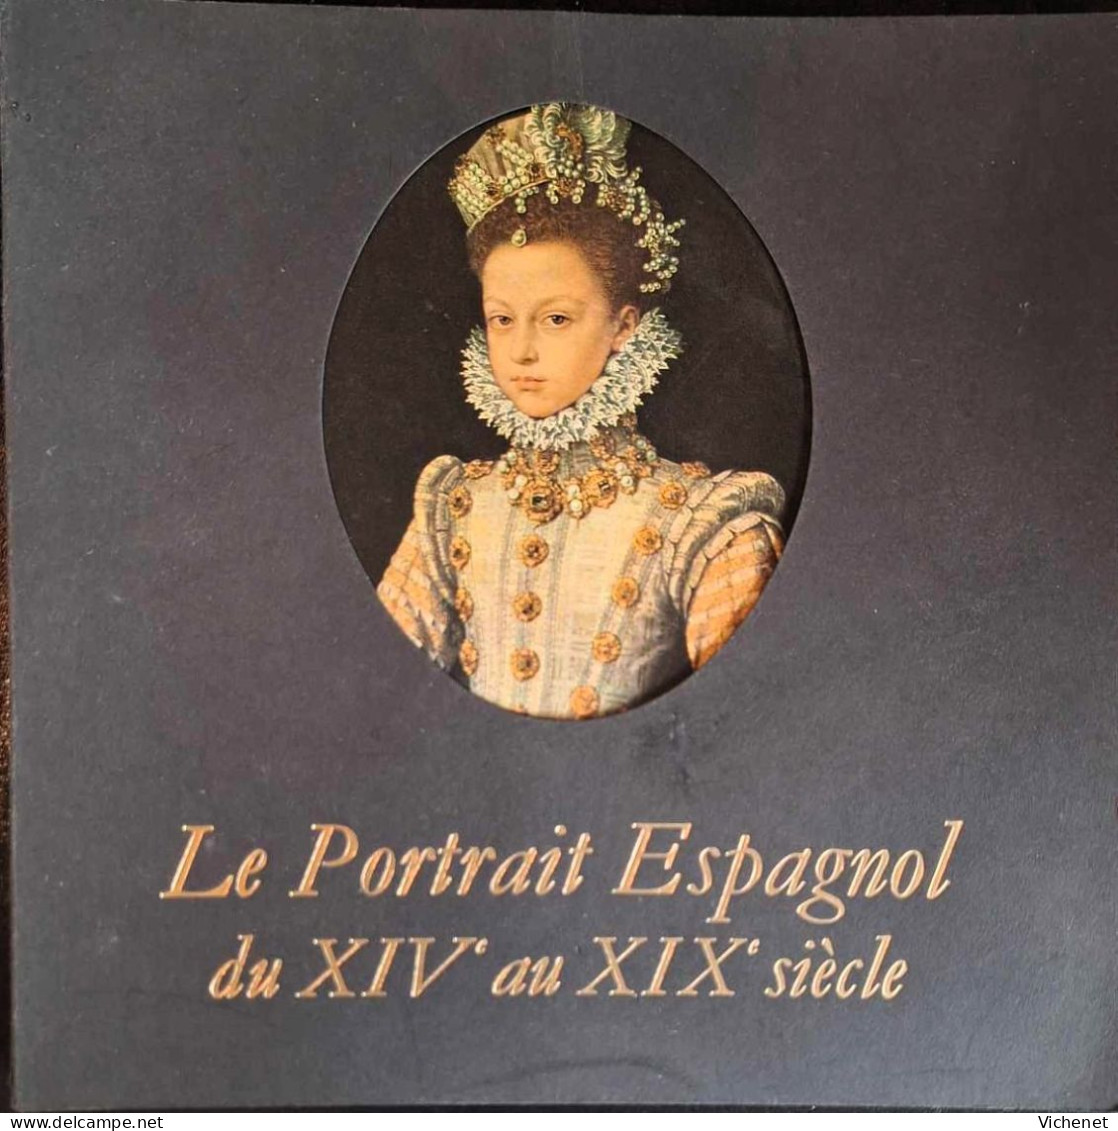 Le Portrait Espagnol Du XIVe Au XIXe Siècle - Catalogue D' Exposition  - Bruxelles - 1970 - Arte